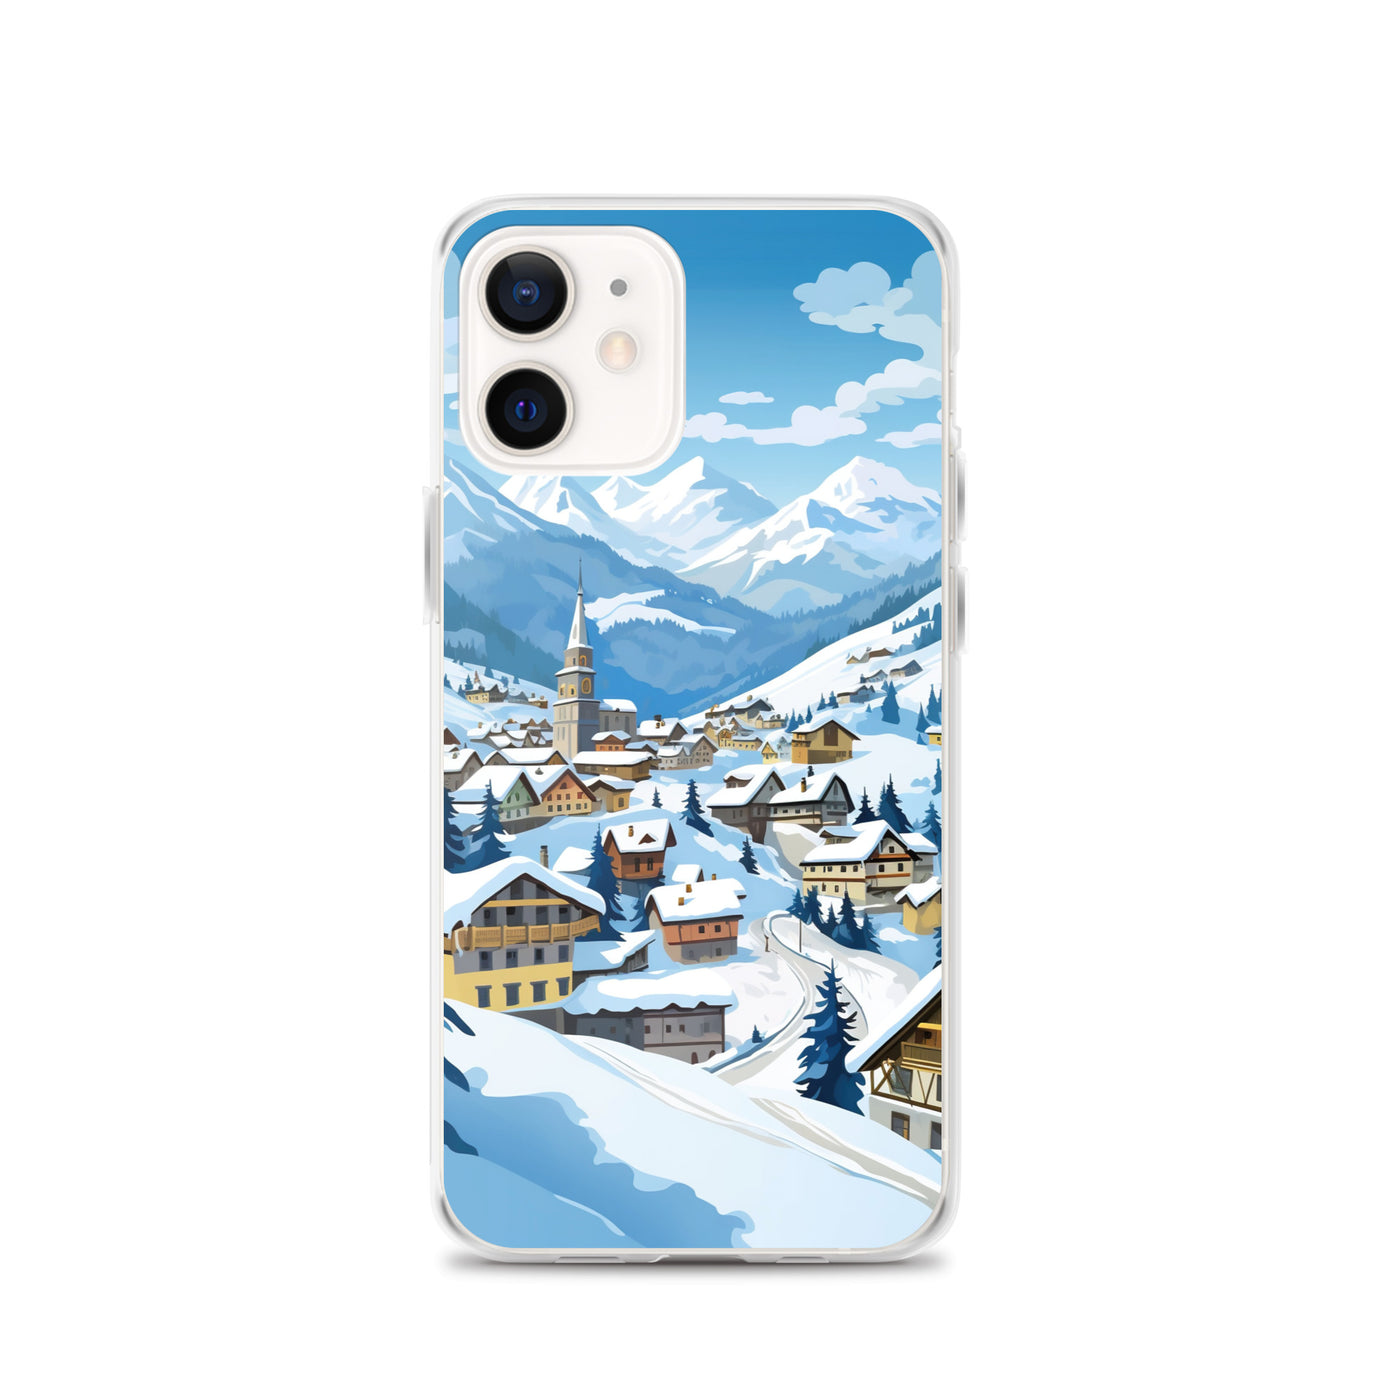 Kitzbühl - Berge und Schnee - Landschaftsmalerei - iPhone Schutzhülle (durchsichtig) ski xxx iPhone 12